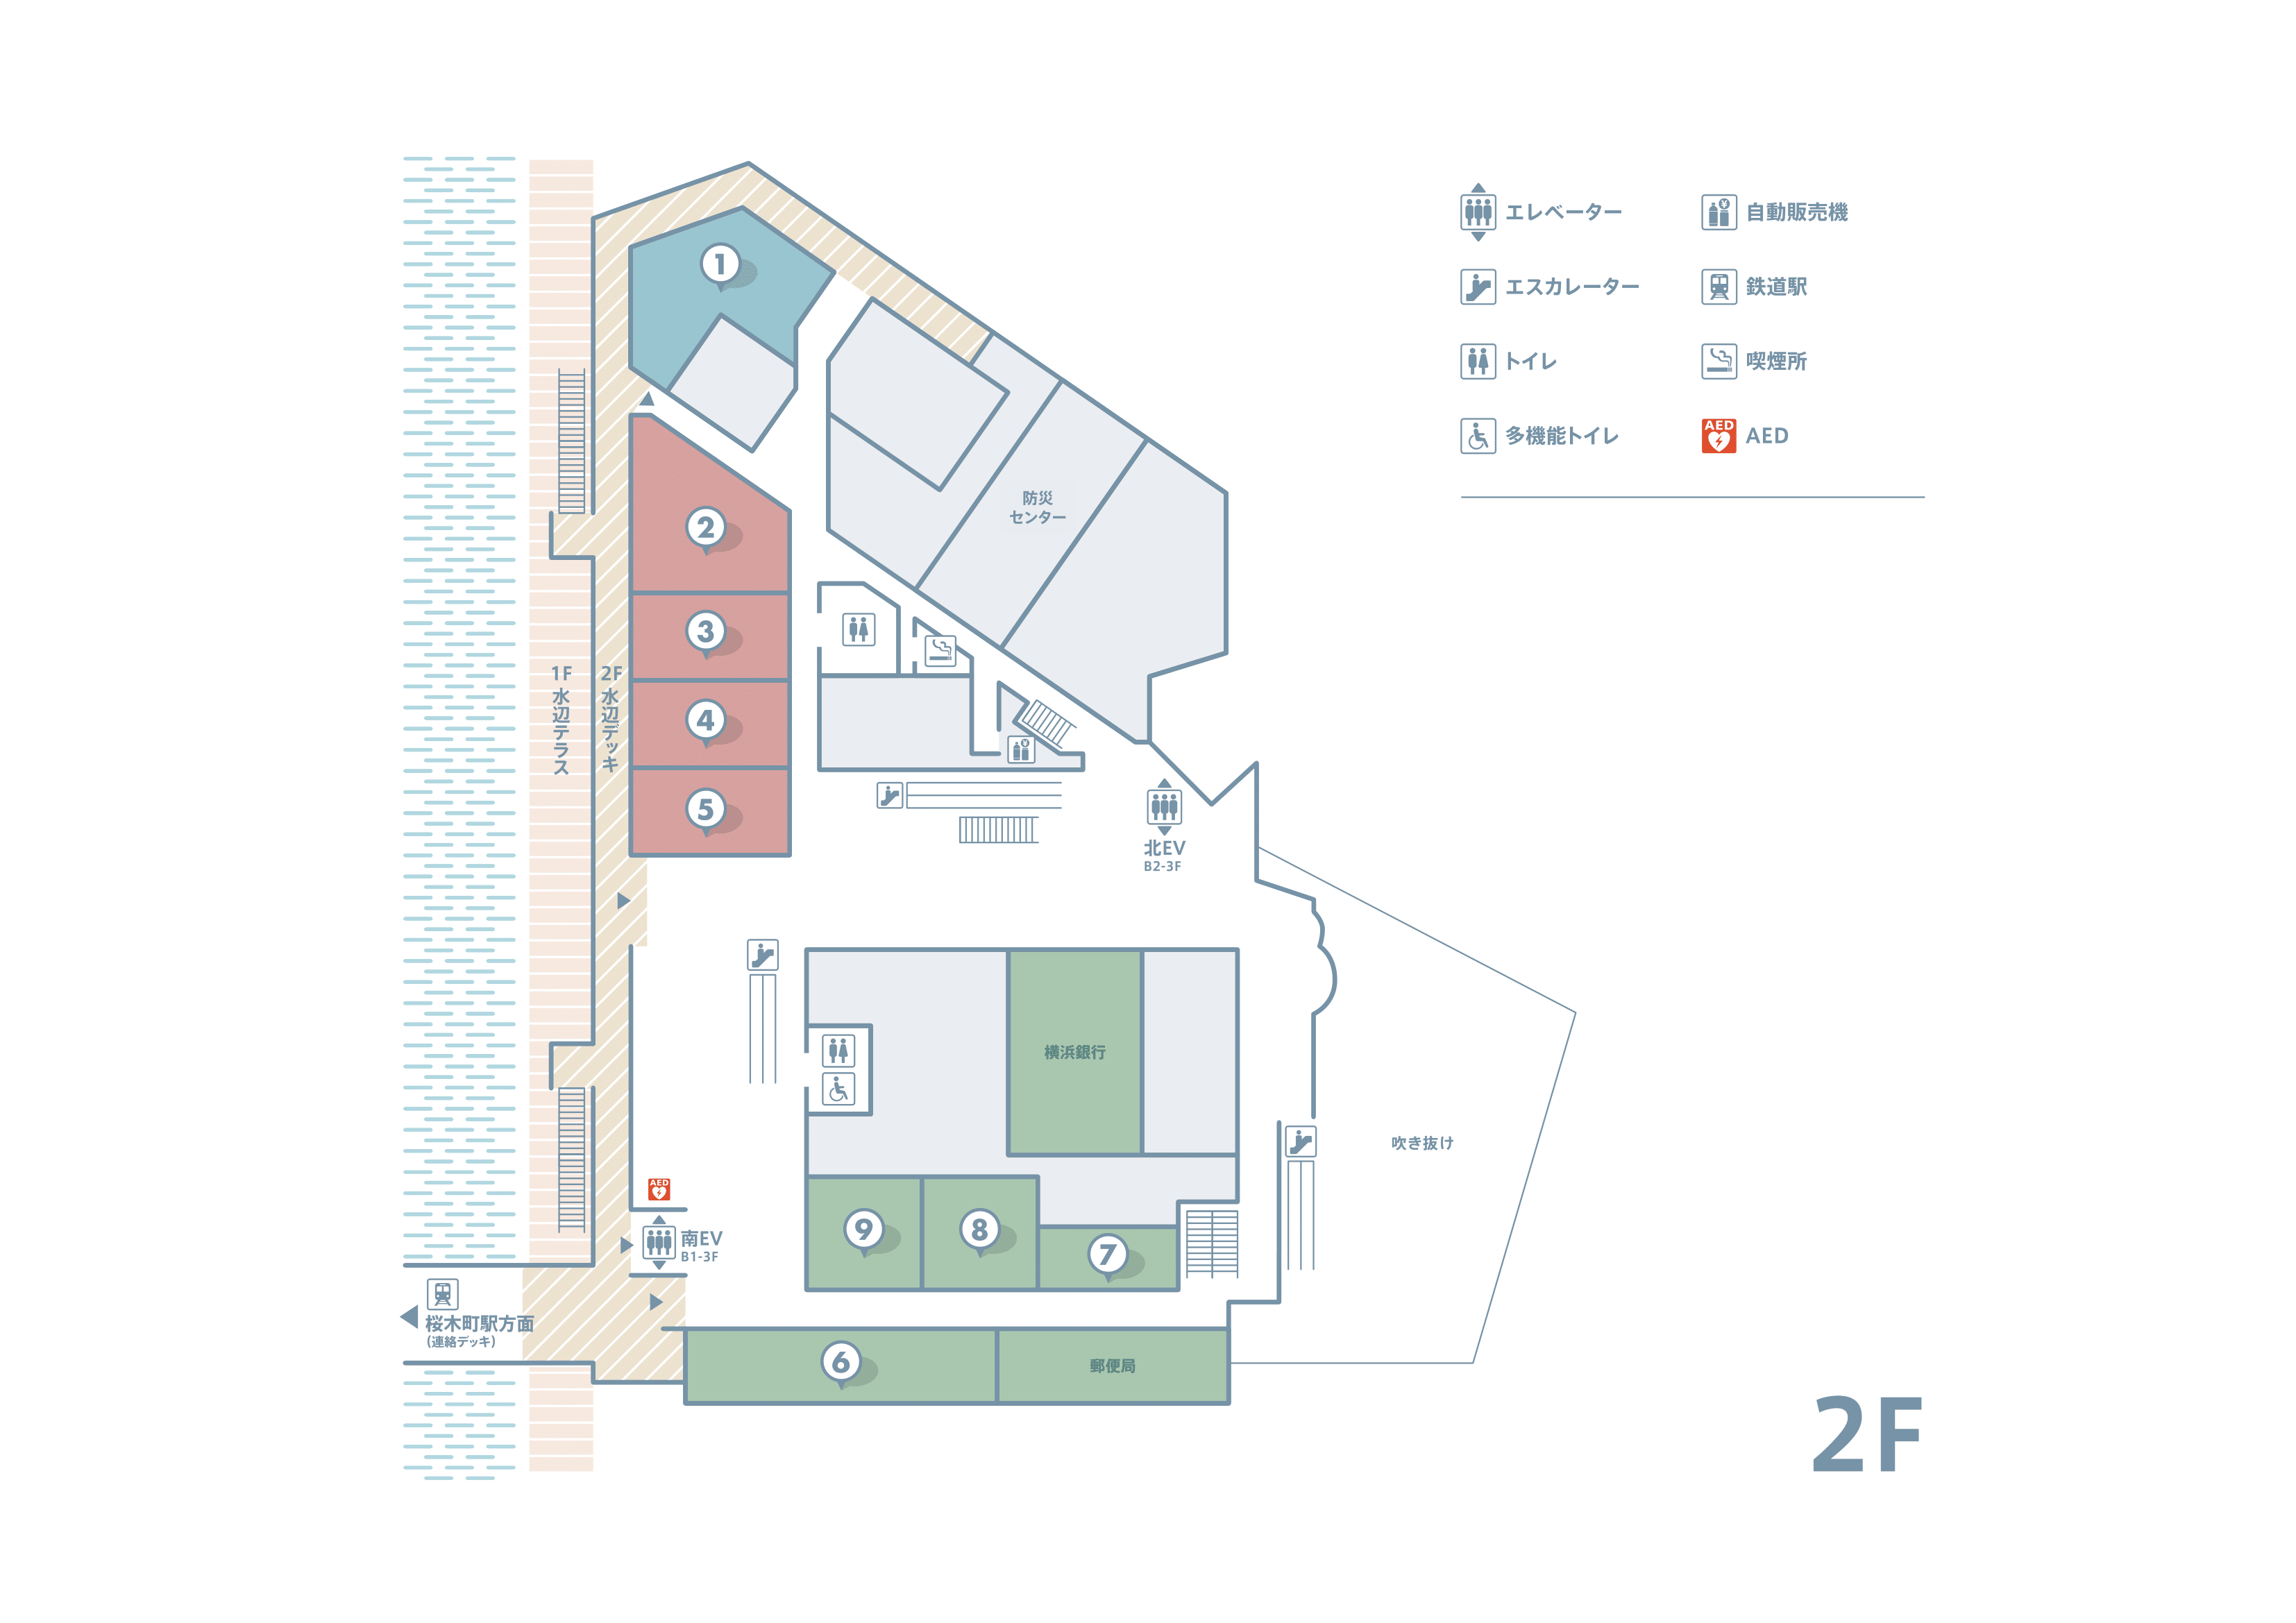 2f floor map